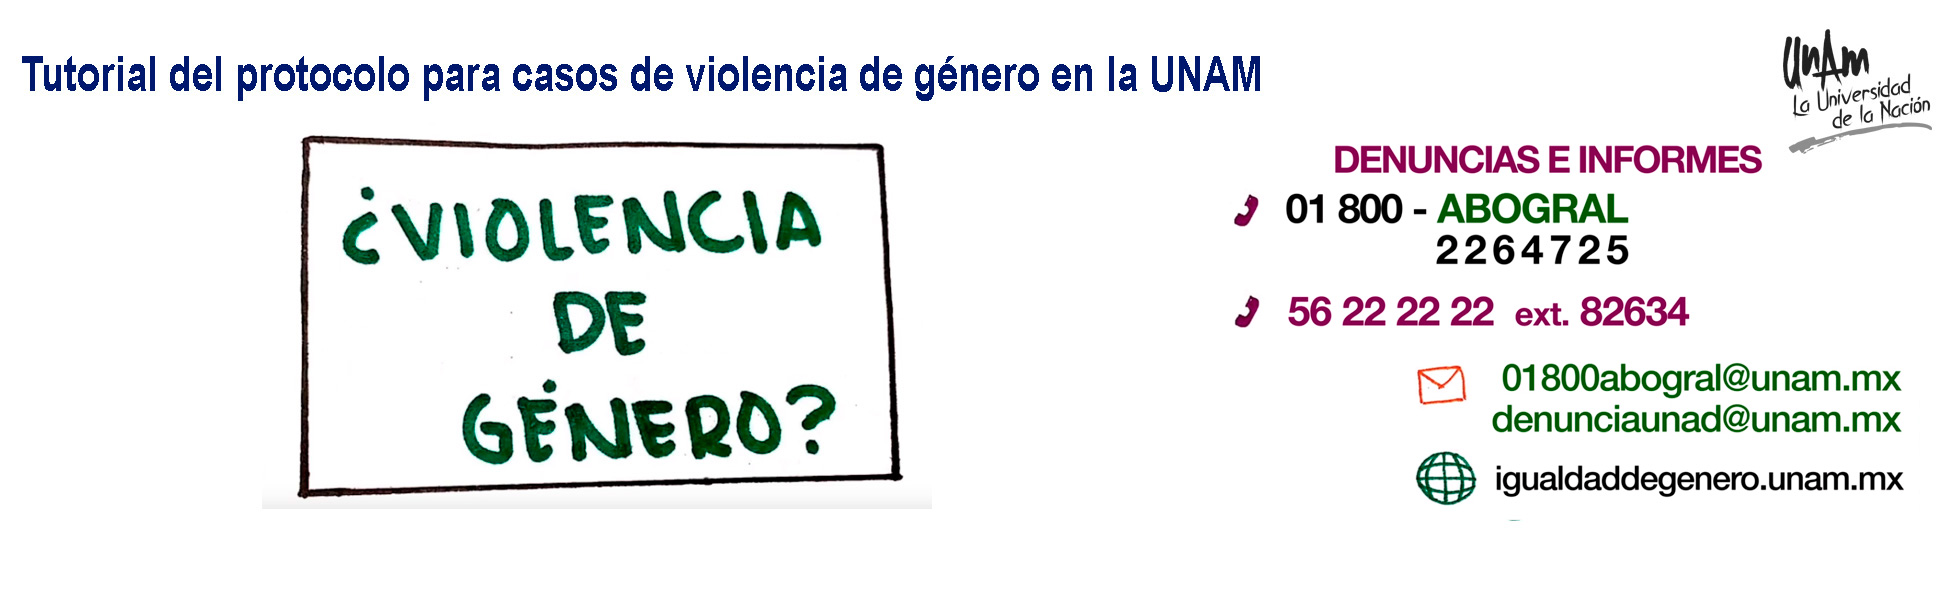 Tutorial del protocolo para casos de violencia de género en la UNAM, 2019